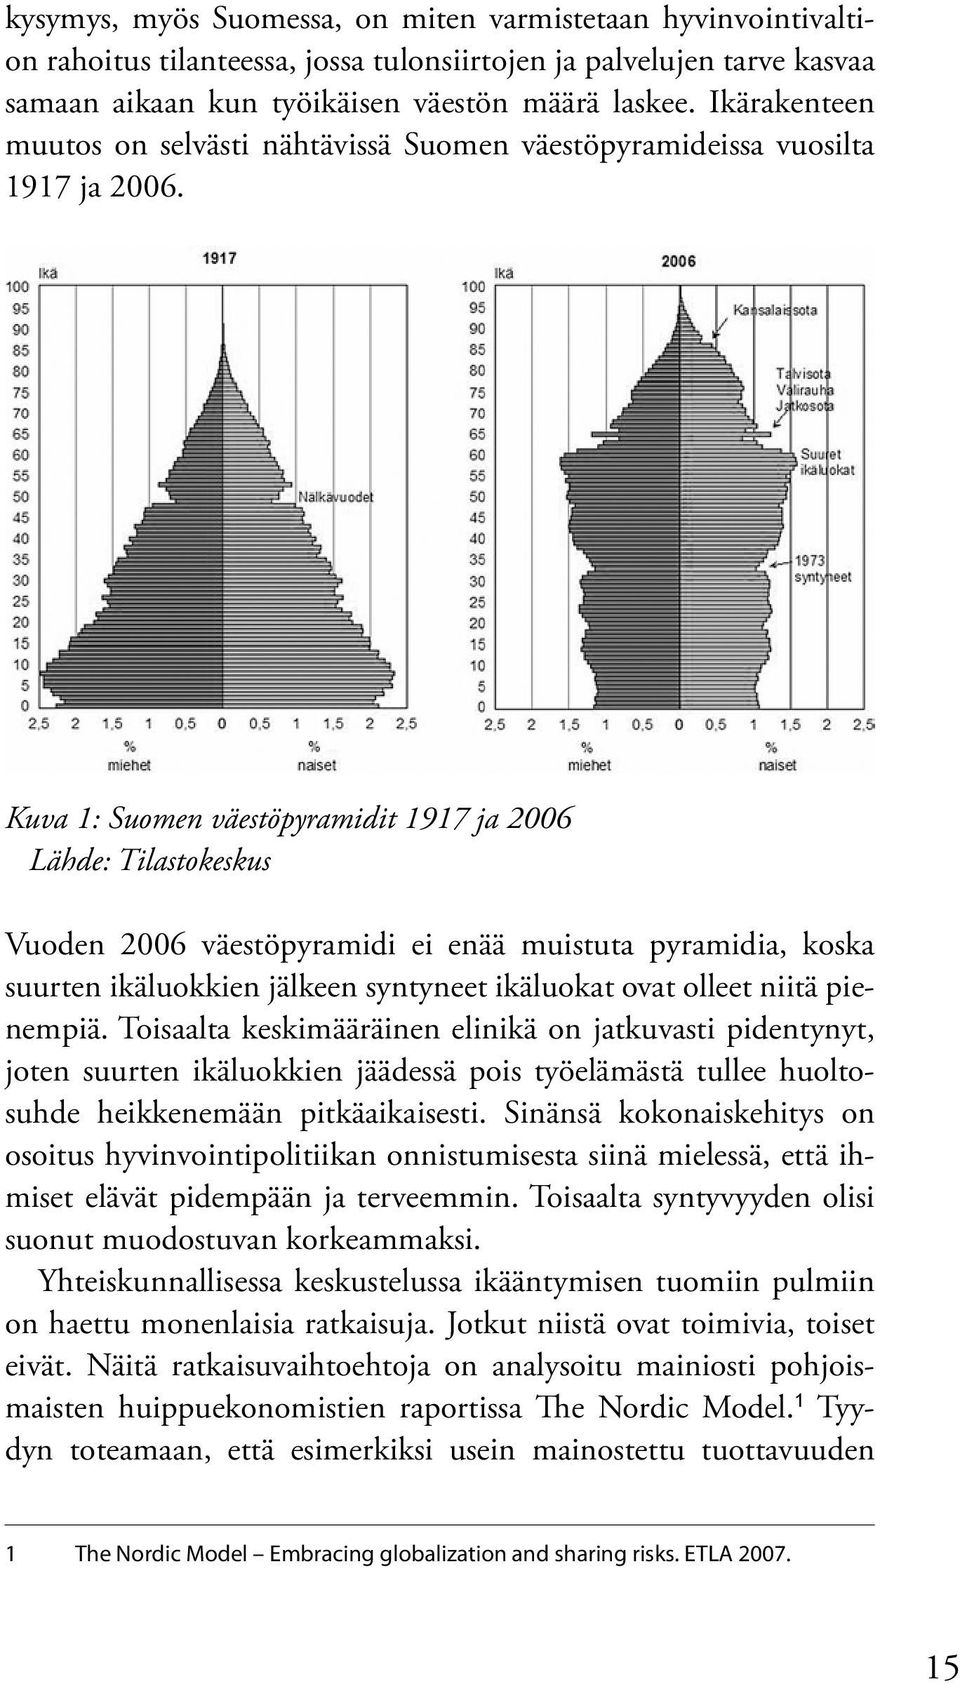 Kuva 1: Suomen väestöpyramidit 1917 ja 2006 Lähde: Tilastokeskus Vuoden 2006 väestöpyramidi ei enää muistuta pyramidia, koska suurten ikäluokkien jälkeen syntyneet ikäluokat ovat olleet niitä